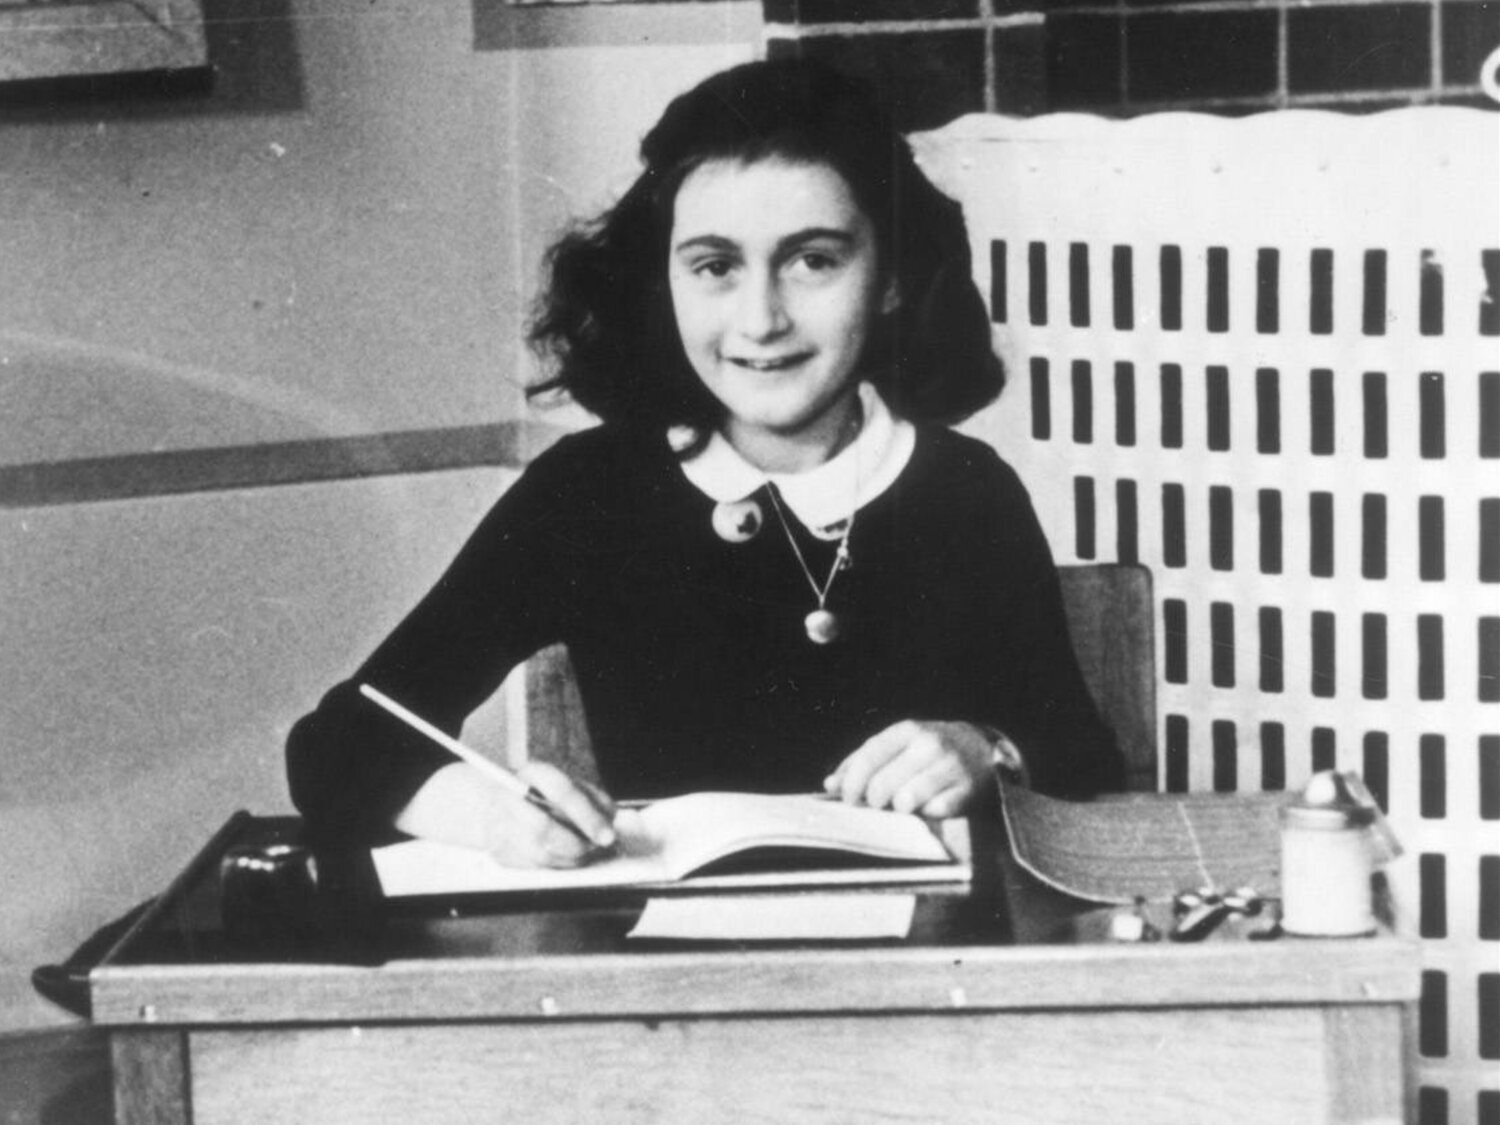 Descubren la identidad de la persona que reveló a los nazis dónde estaba escondida Ana Frank